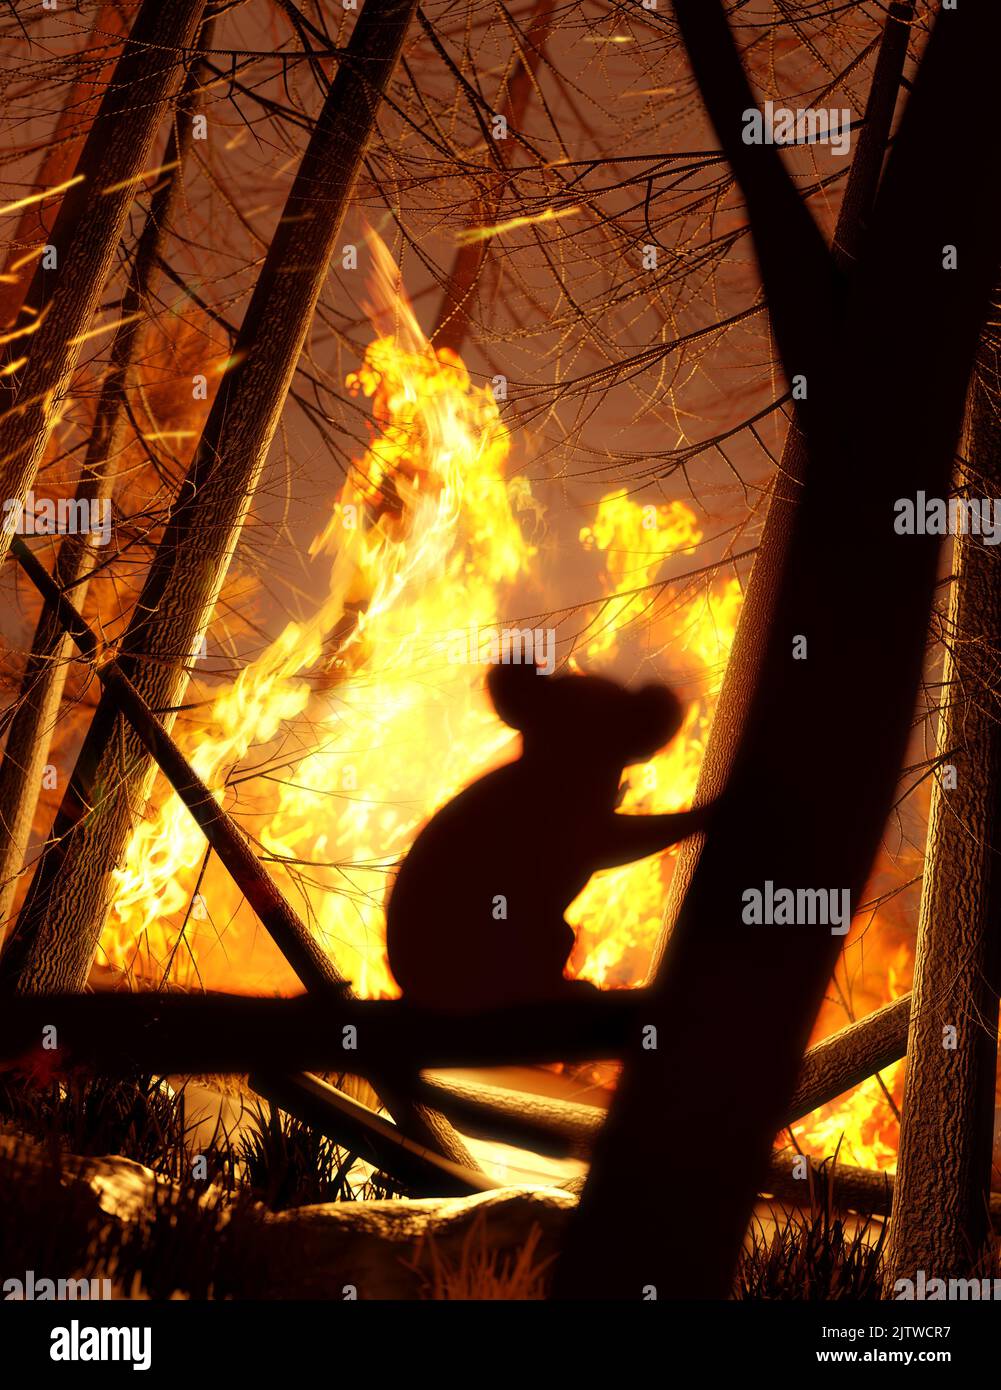 Ein Koala-Bär beobachtet und entkommt einem Waldbrand, der seinen natürlichen Lebensraum zerstört. Klimawandel und extreme Wetterereignisse 3D Illustration. Stockfoto